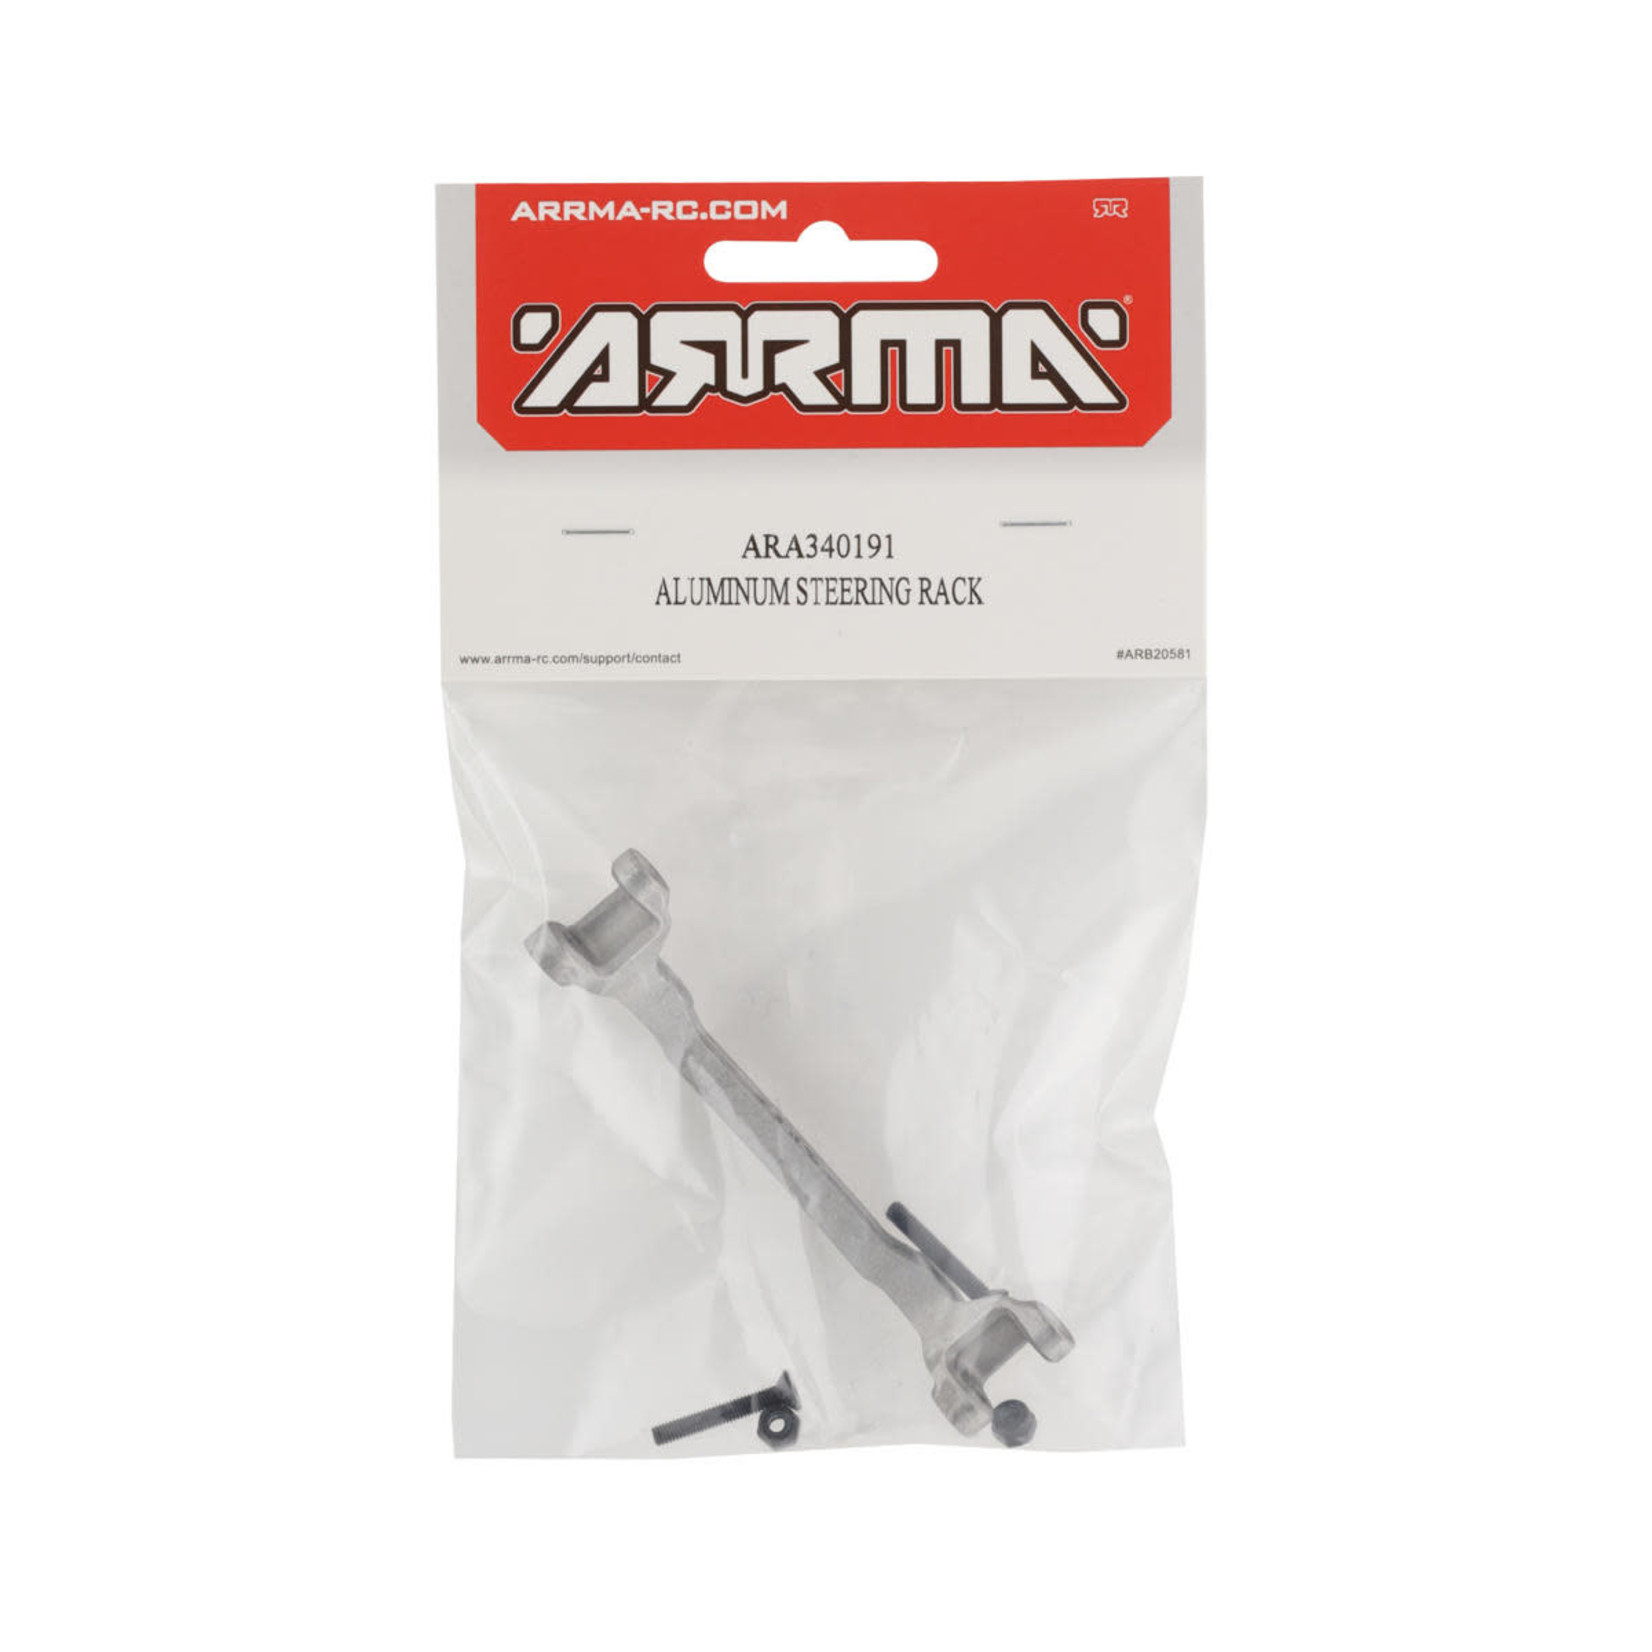 ARRMA Arrma Aluminum Steering Rack #ARA340191